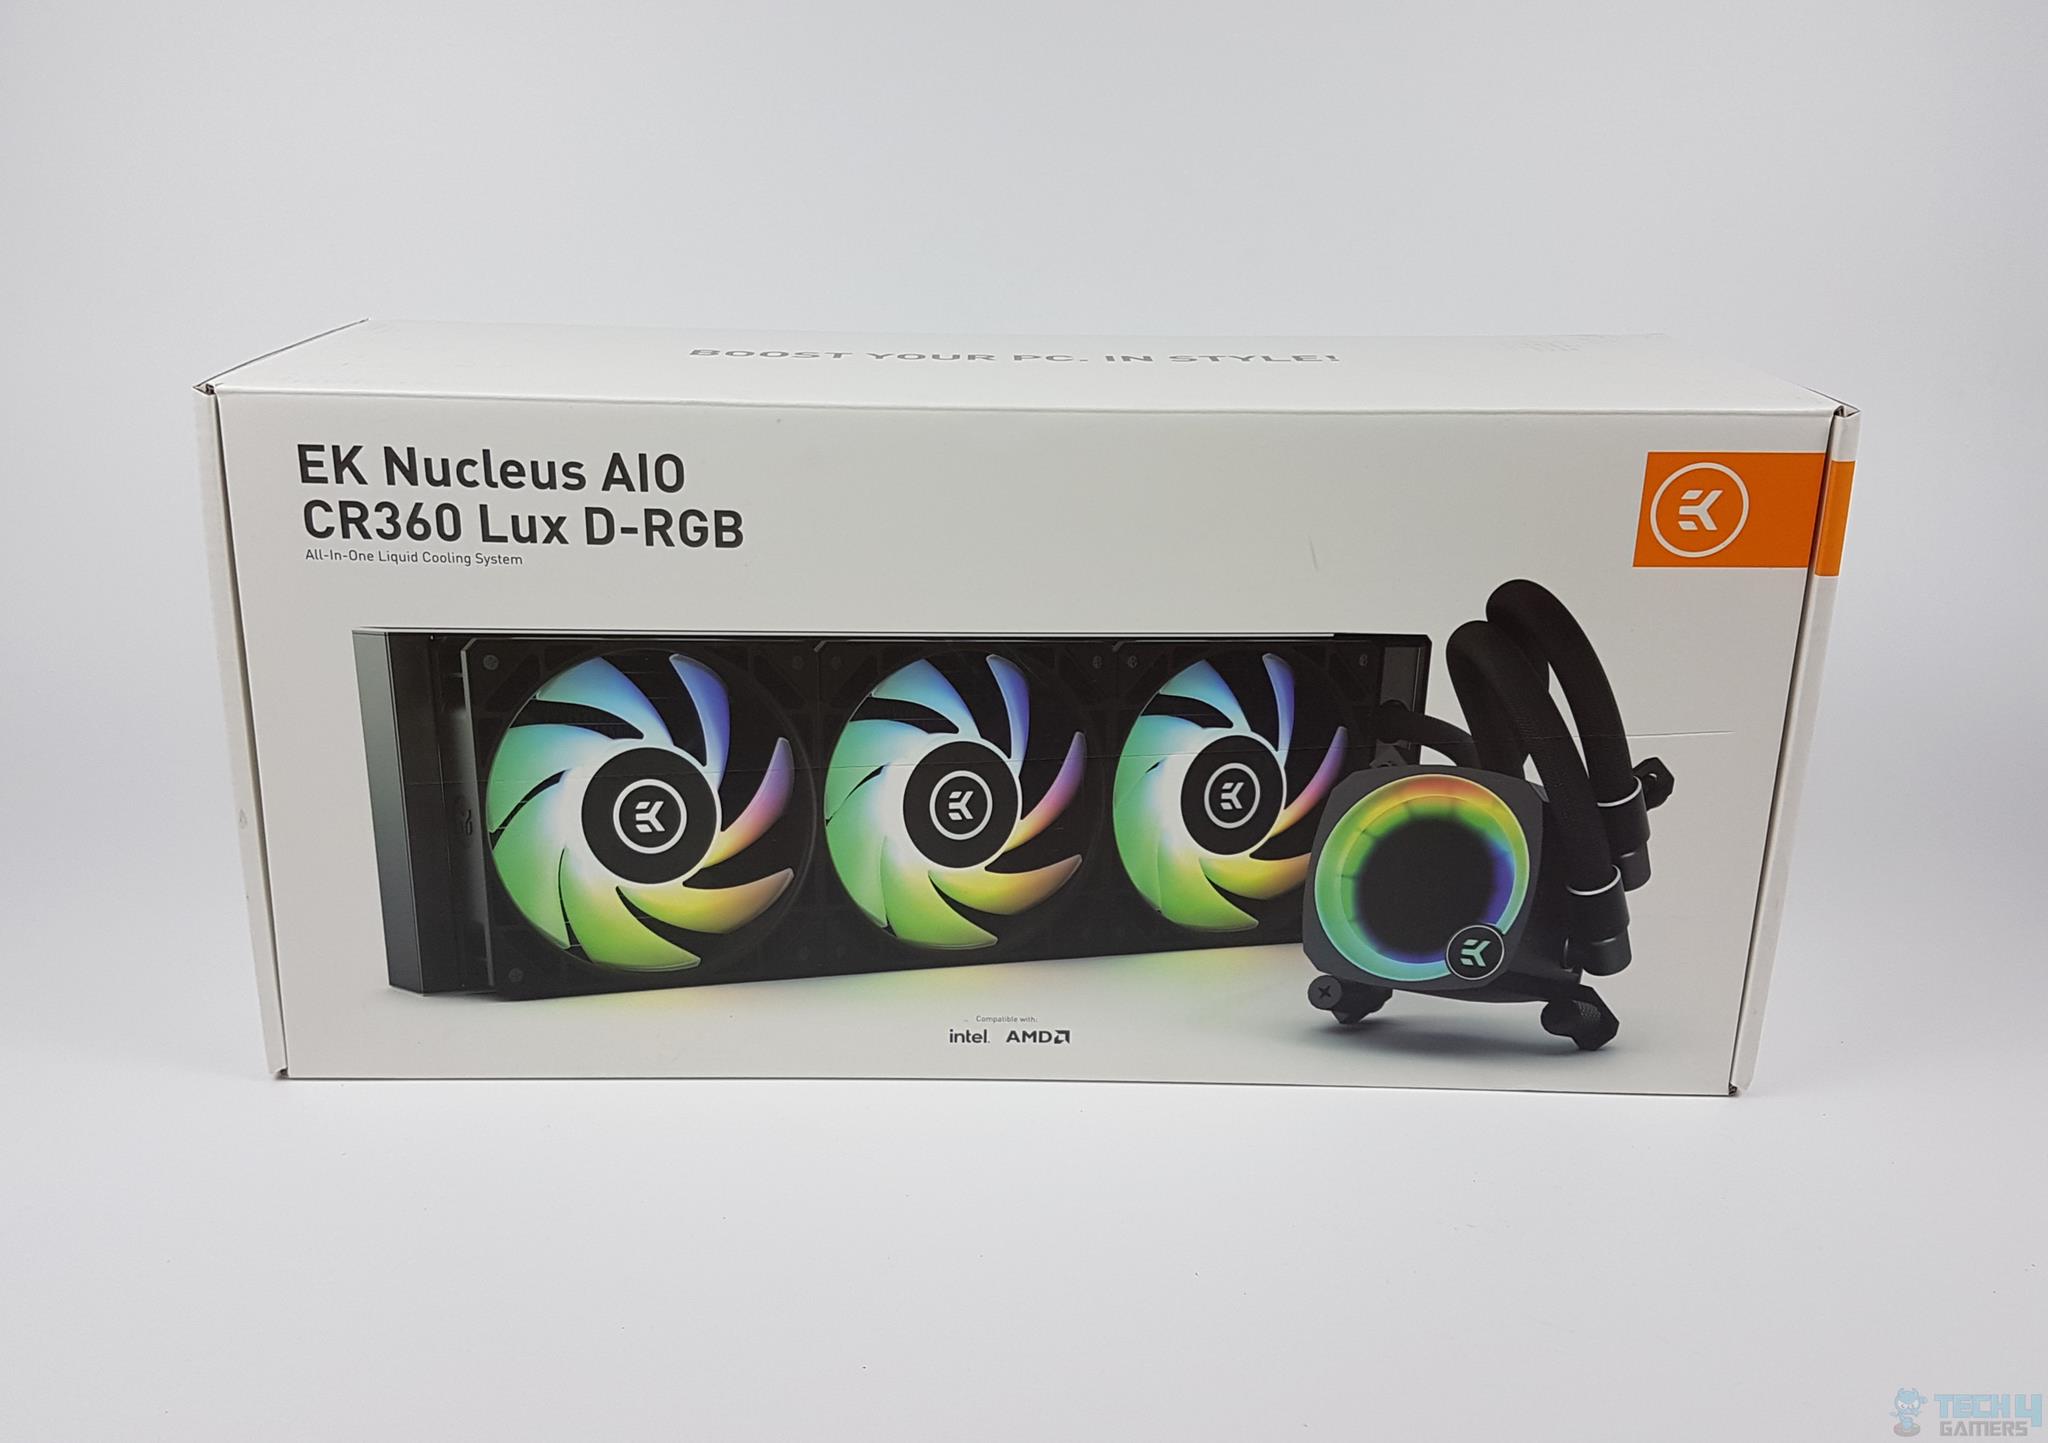 EK-Nucleus AIO CR360 LUX D-RGB — Packing Box